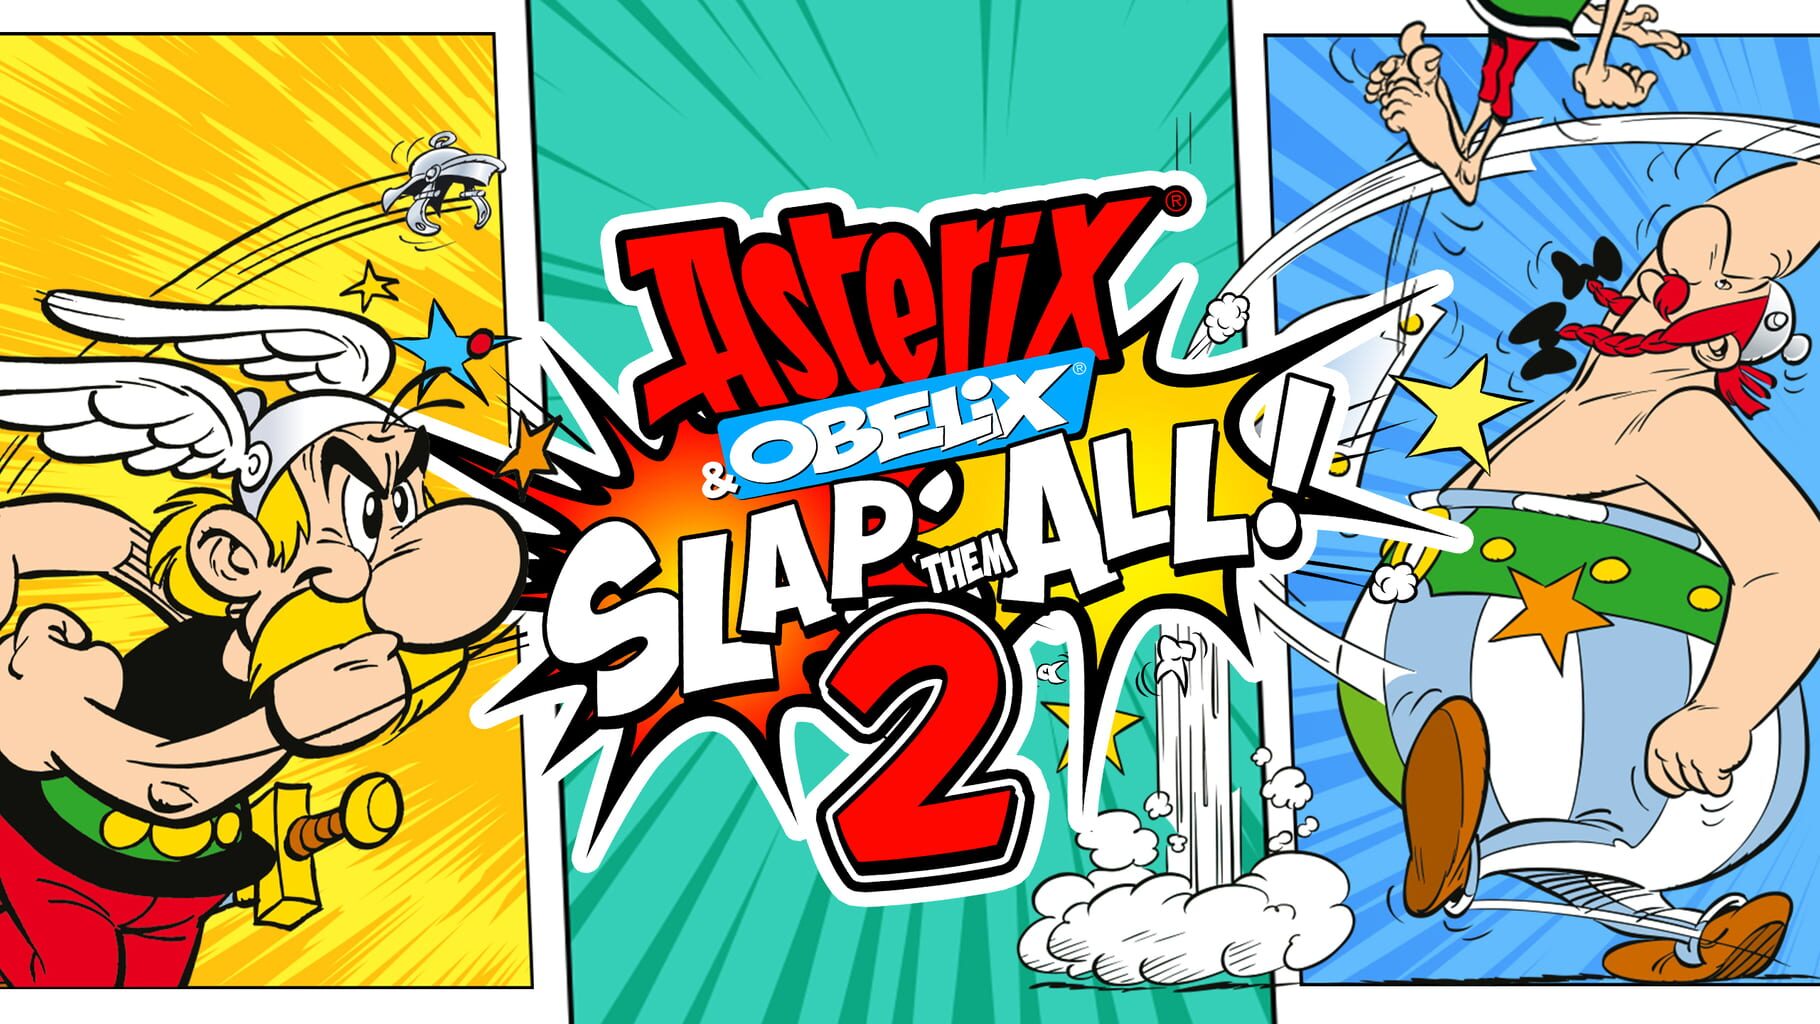 Asterix & Obelix: Slap Them All! 2 artwork